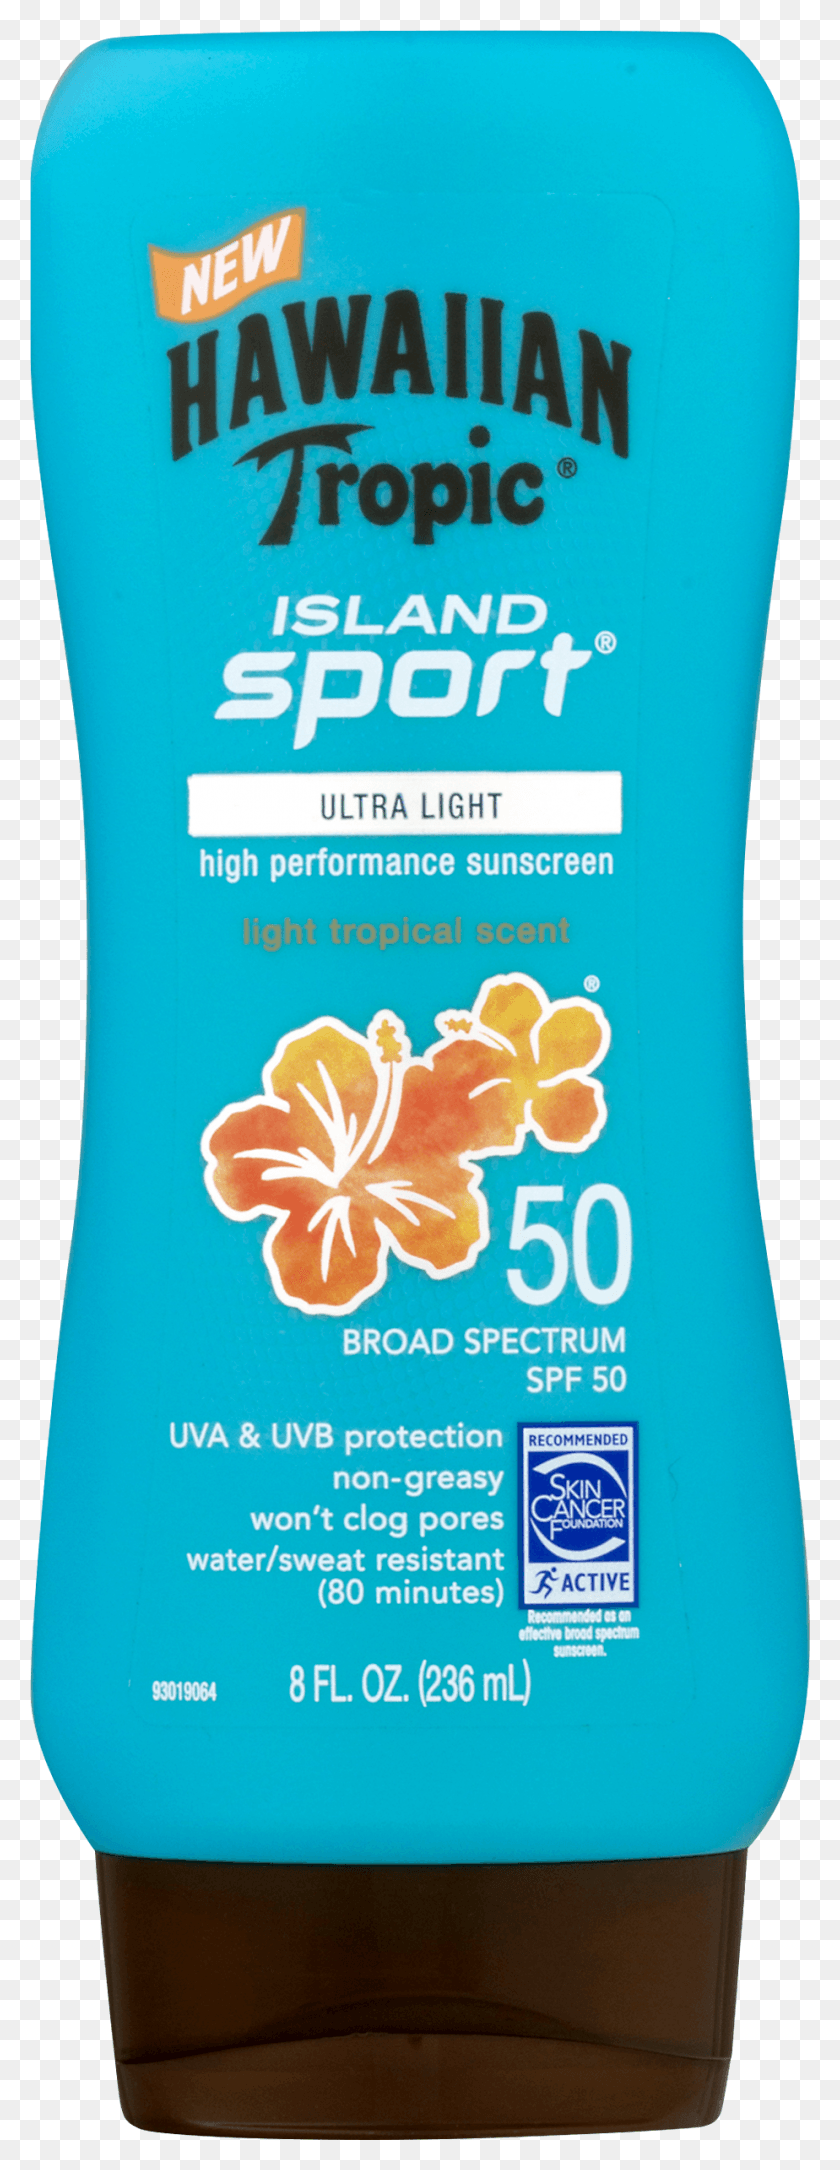 924x2500 Hawaiian Tropic Island Sport Broad Spectrum Sunscreen Hawaiian Tropic Island Sport Lotion, Bottle, Cosmetics, Shampoo HD PNG Download